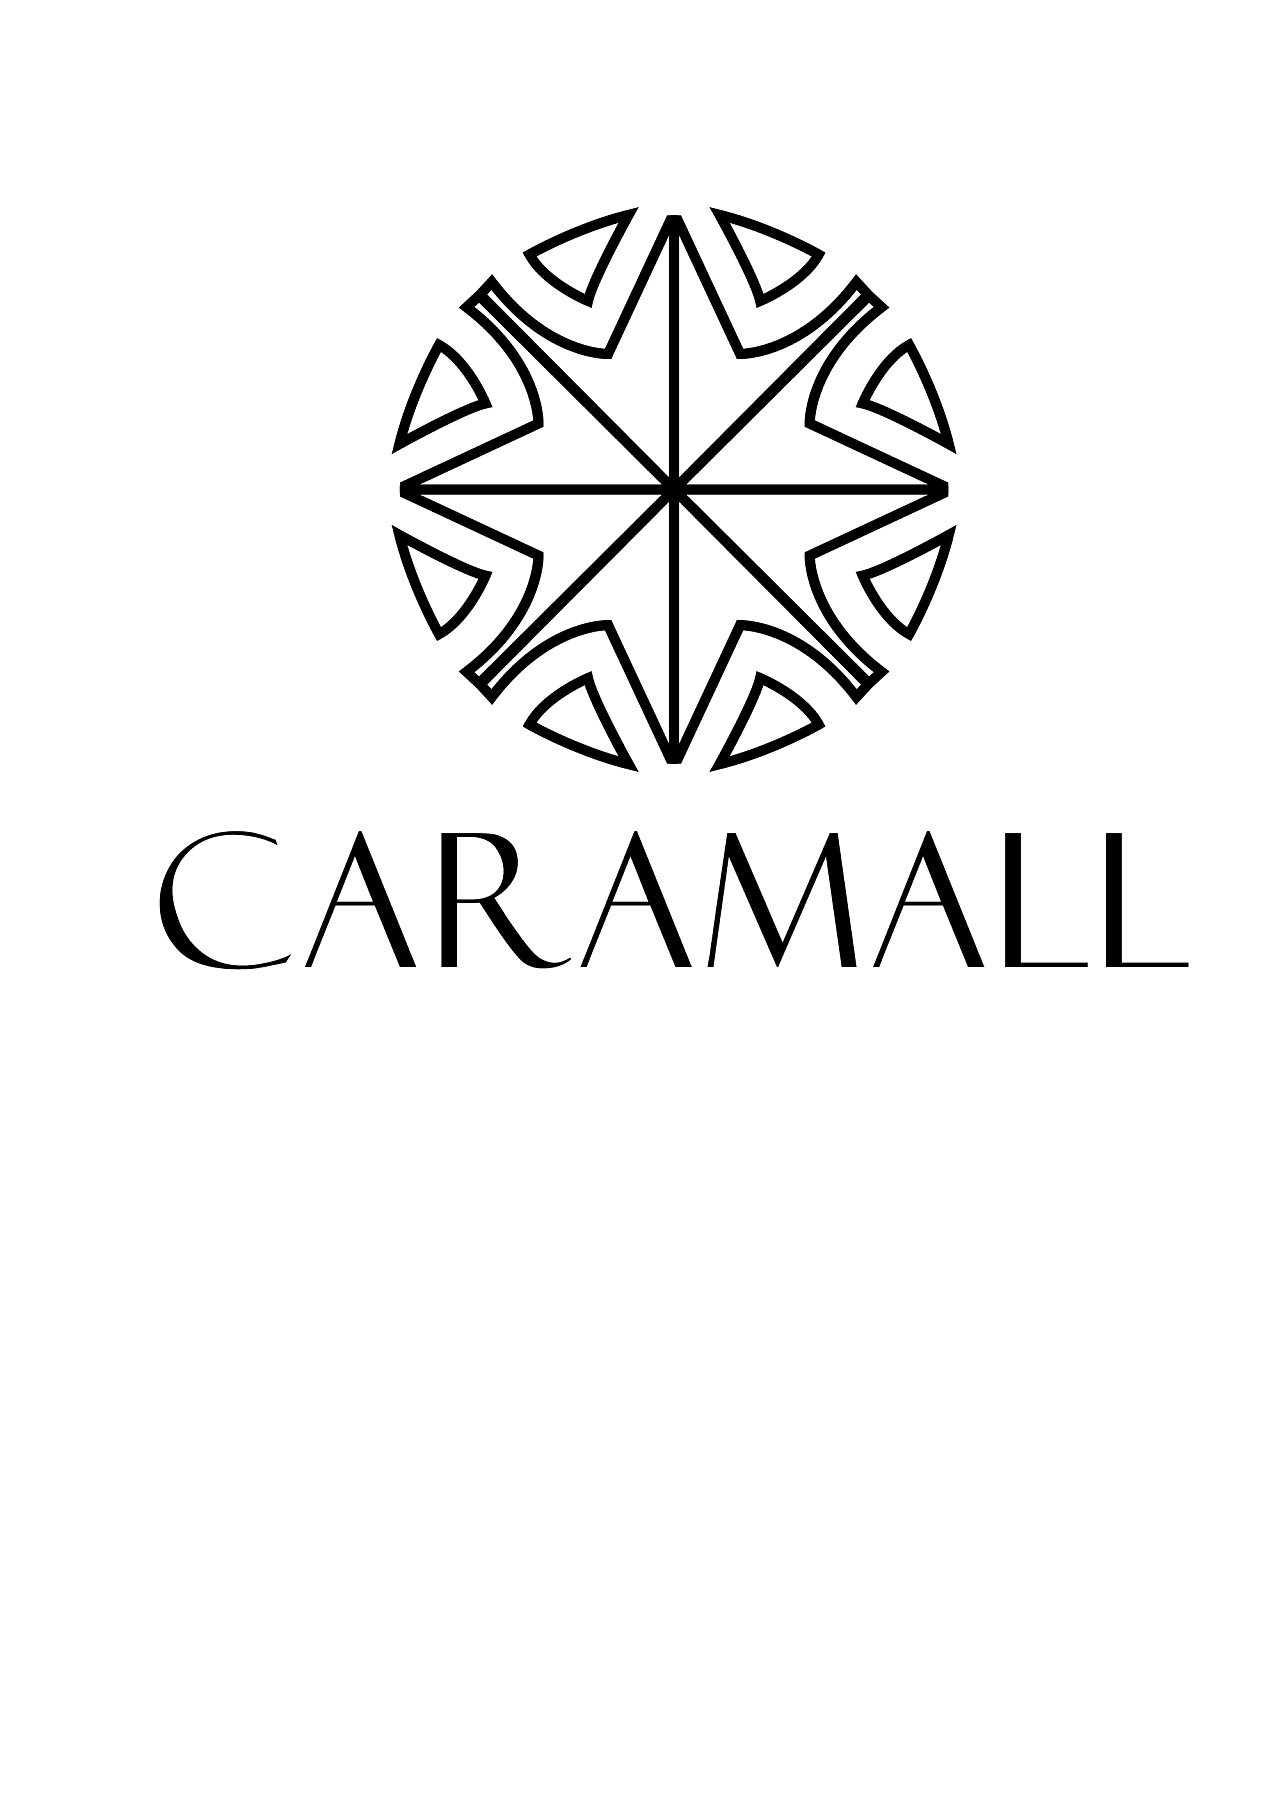 钻石品牌logo